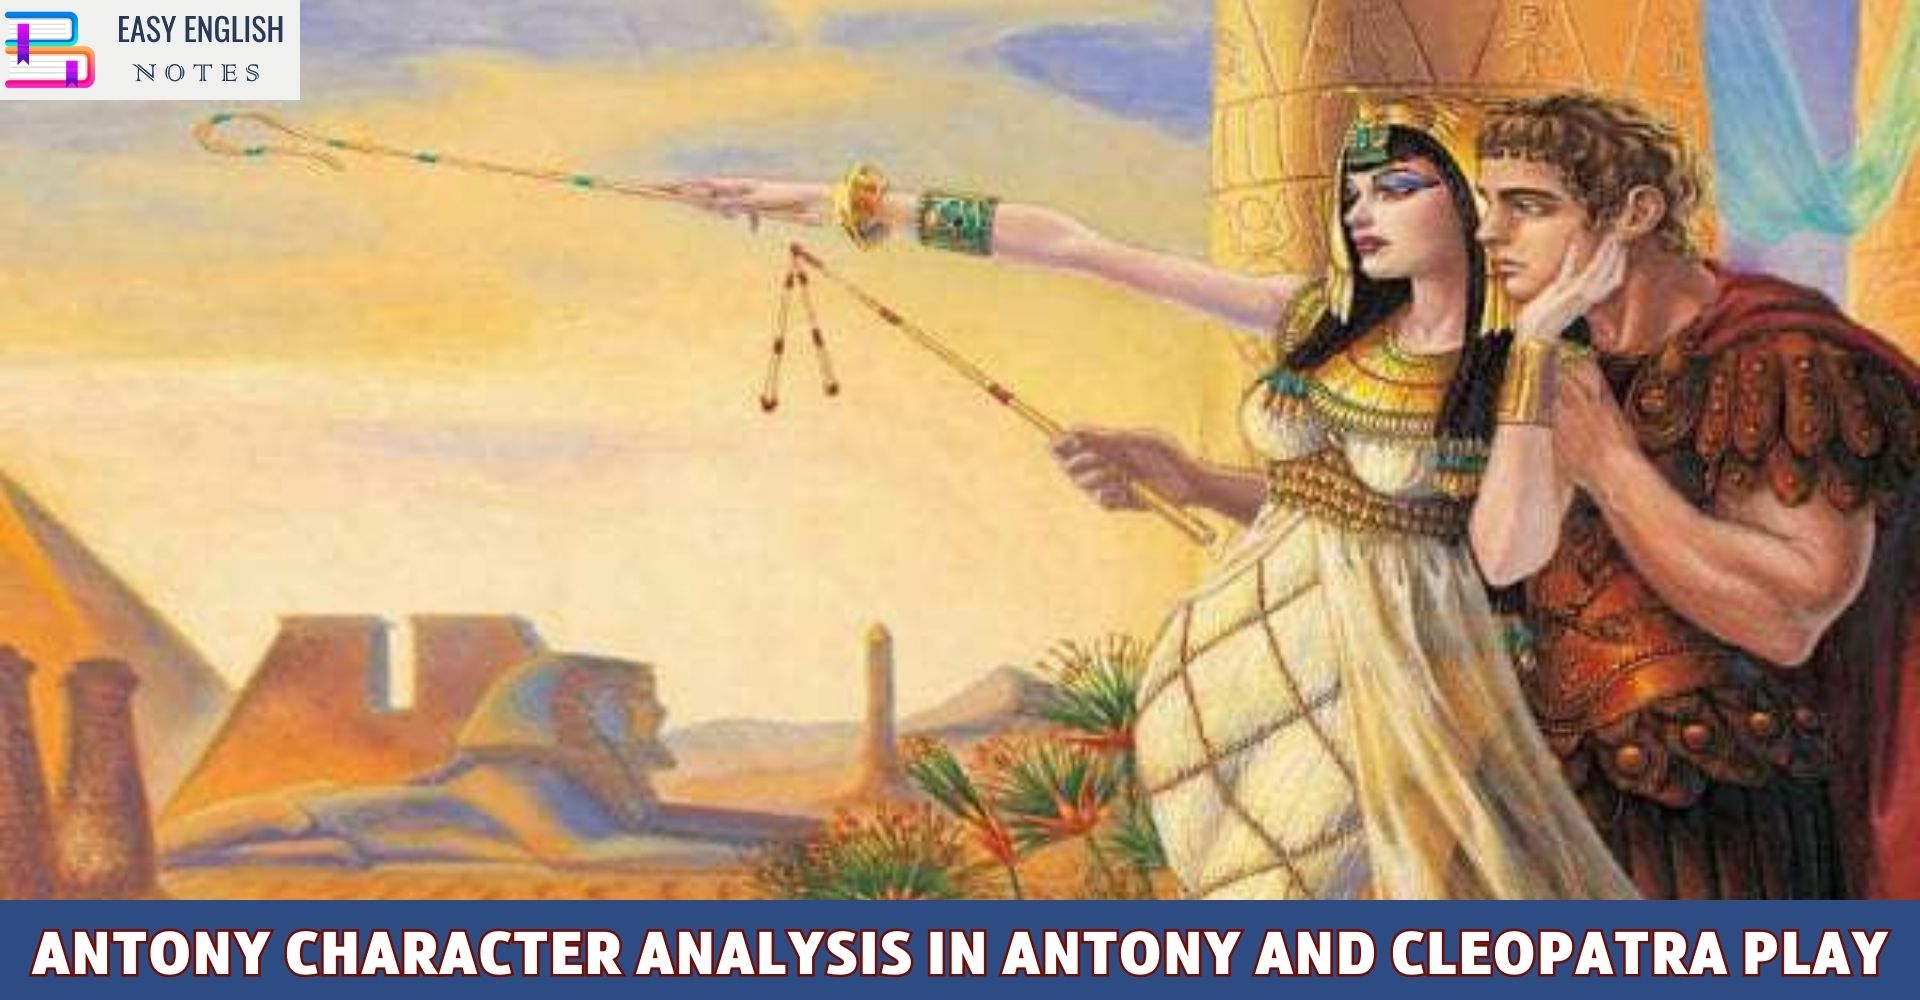 Antony Character Analysis in Antony and Cleopatra Play